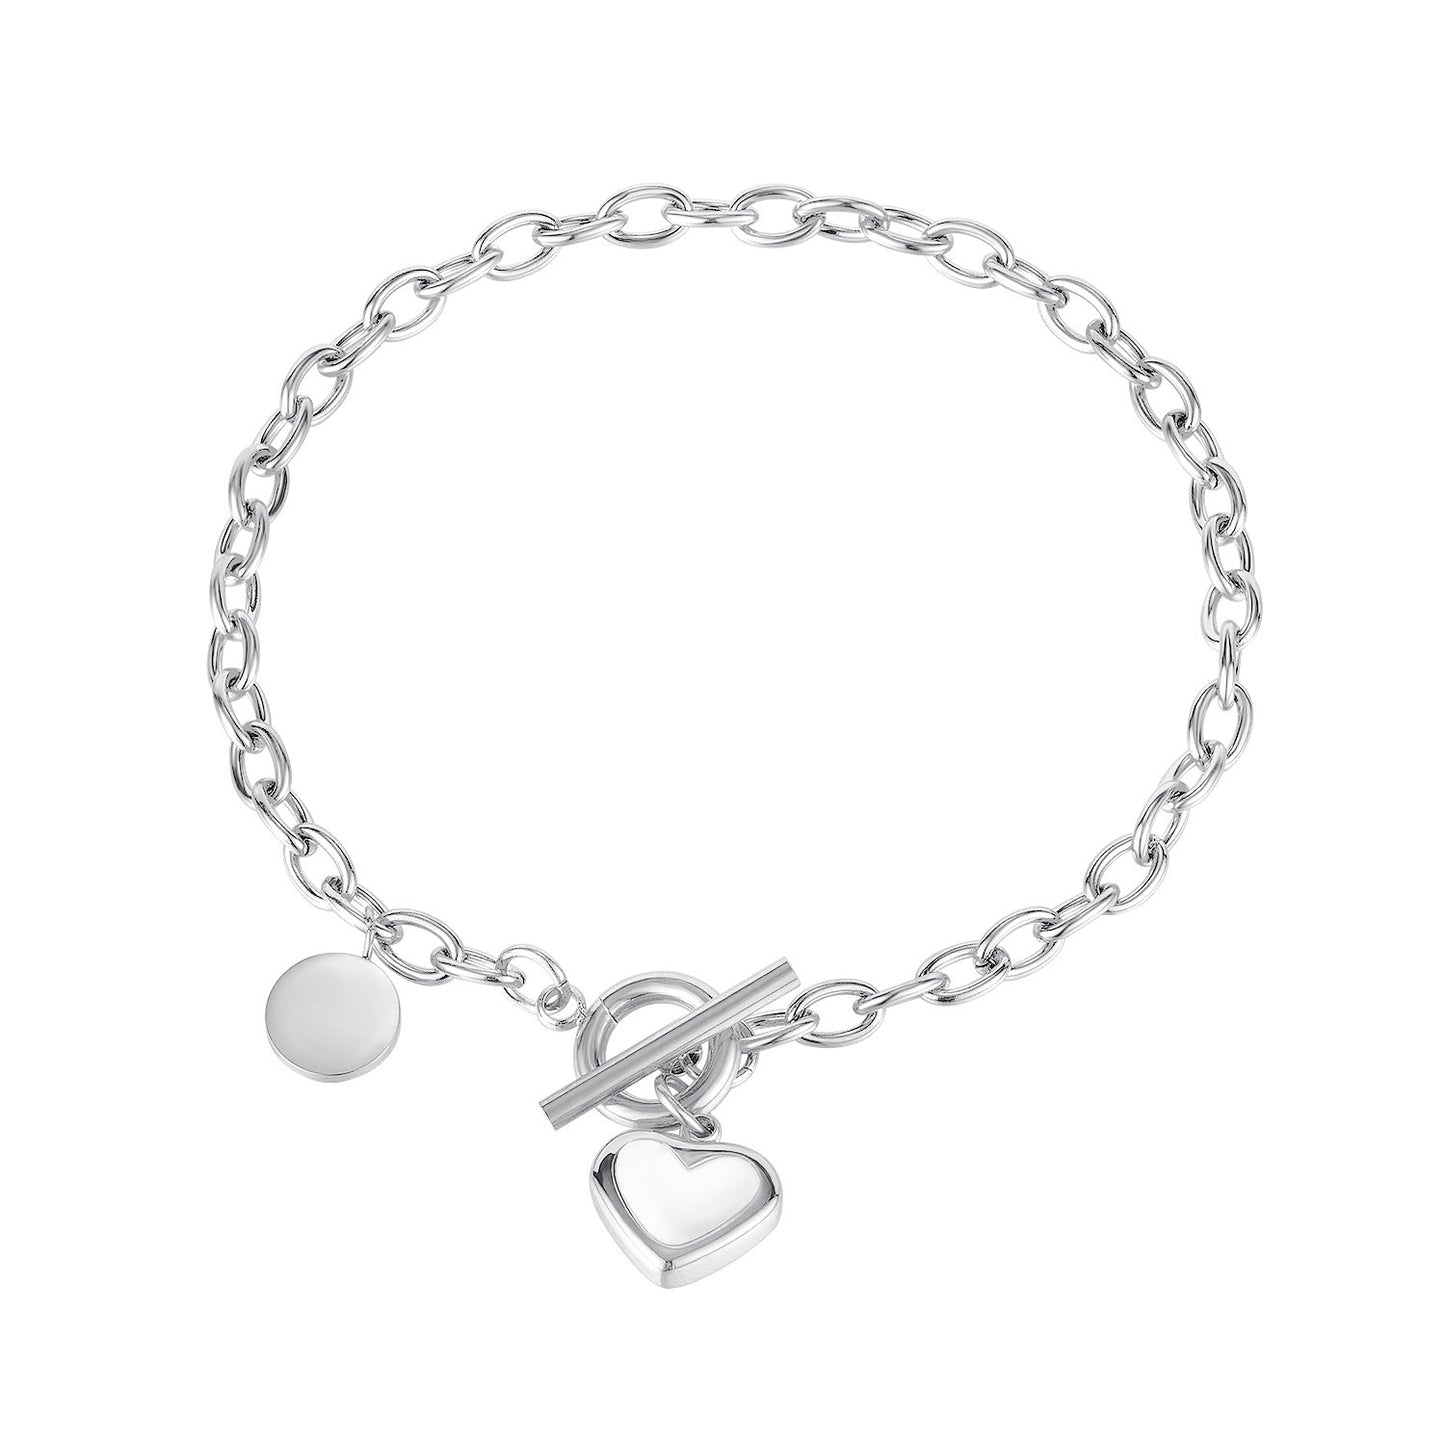 Heart Charm Trending Oval Chain Bracelet